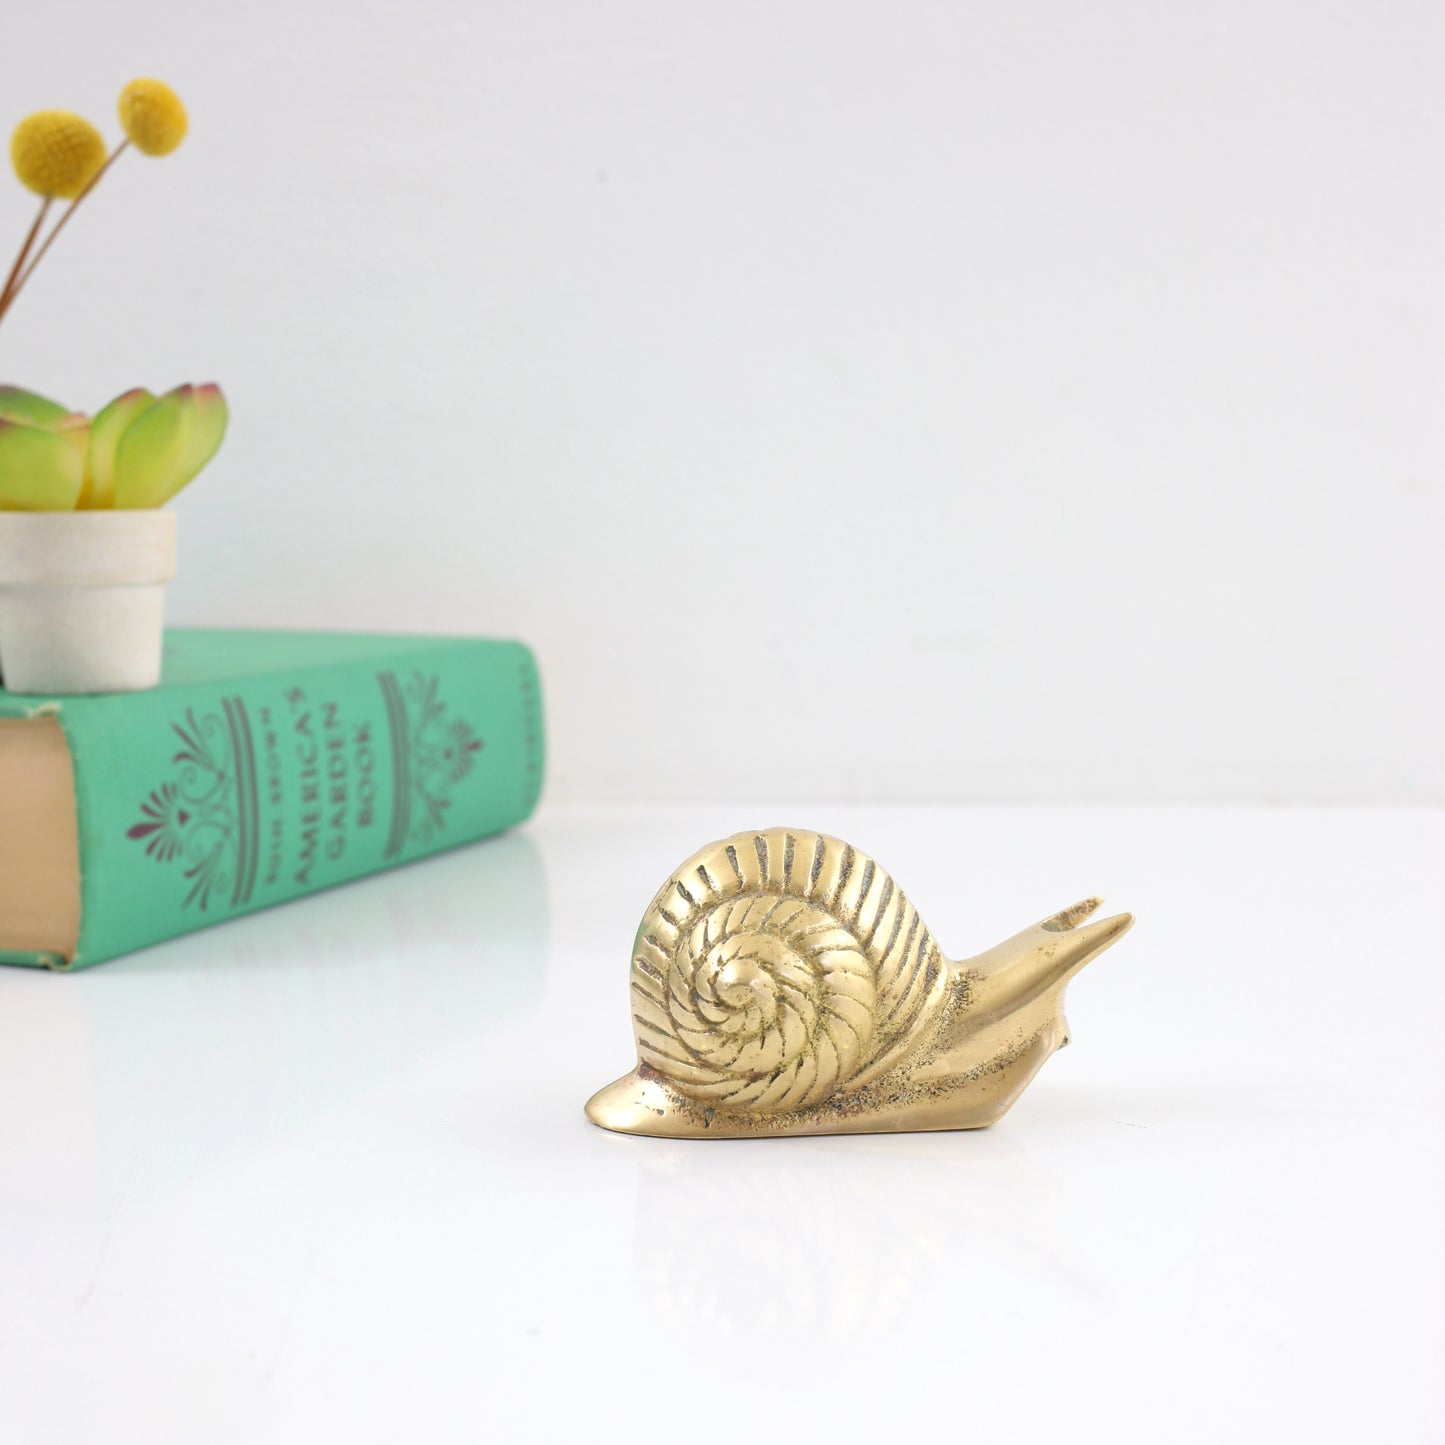 SOLD - Vintage Brass Snail